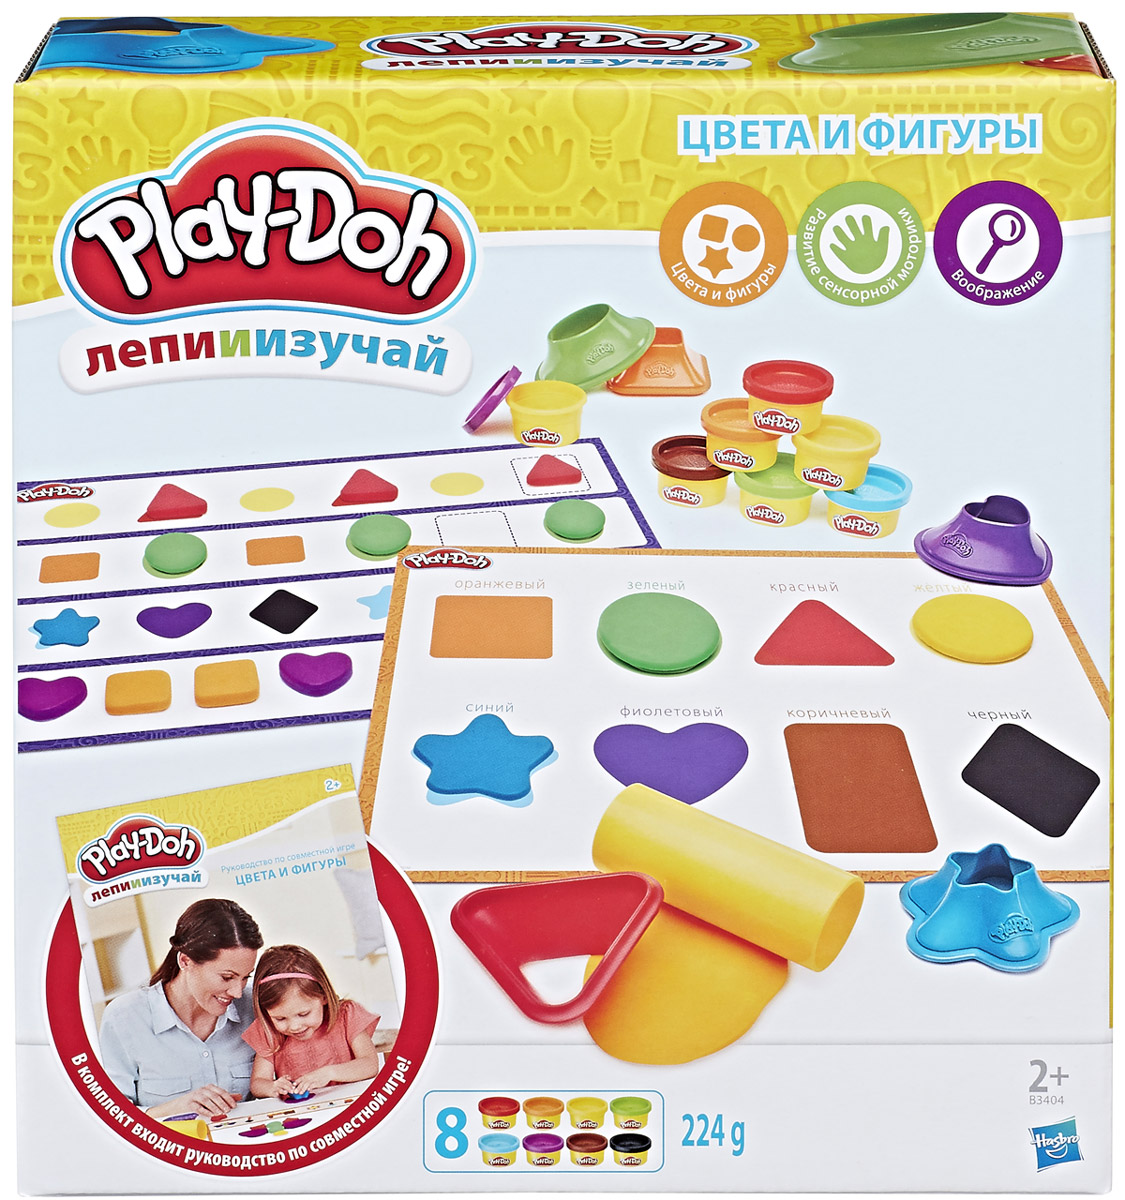 Play-Doh Набор для лепки Цвета и Формы